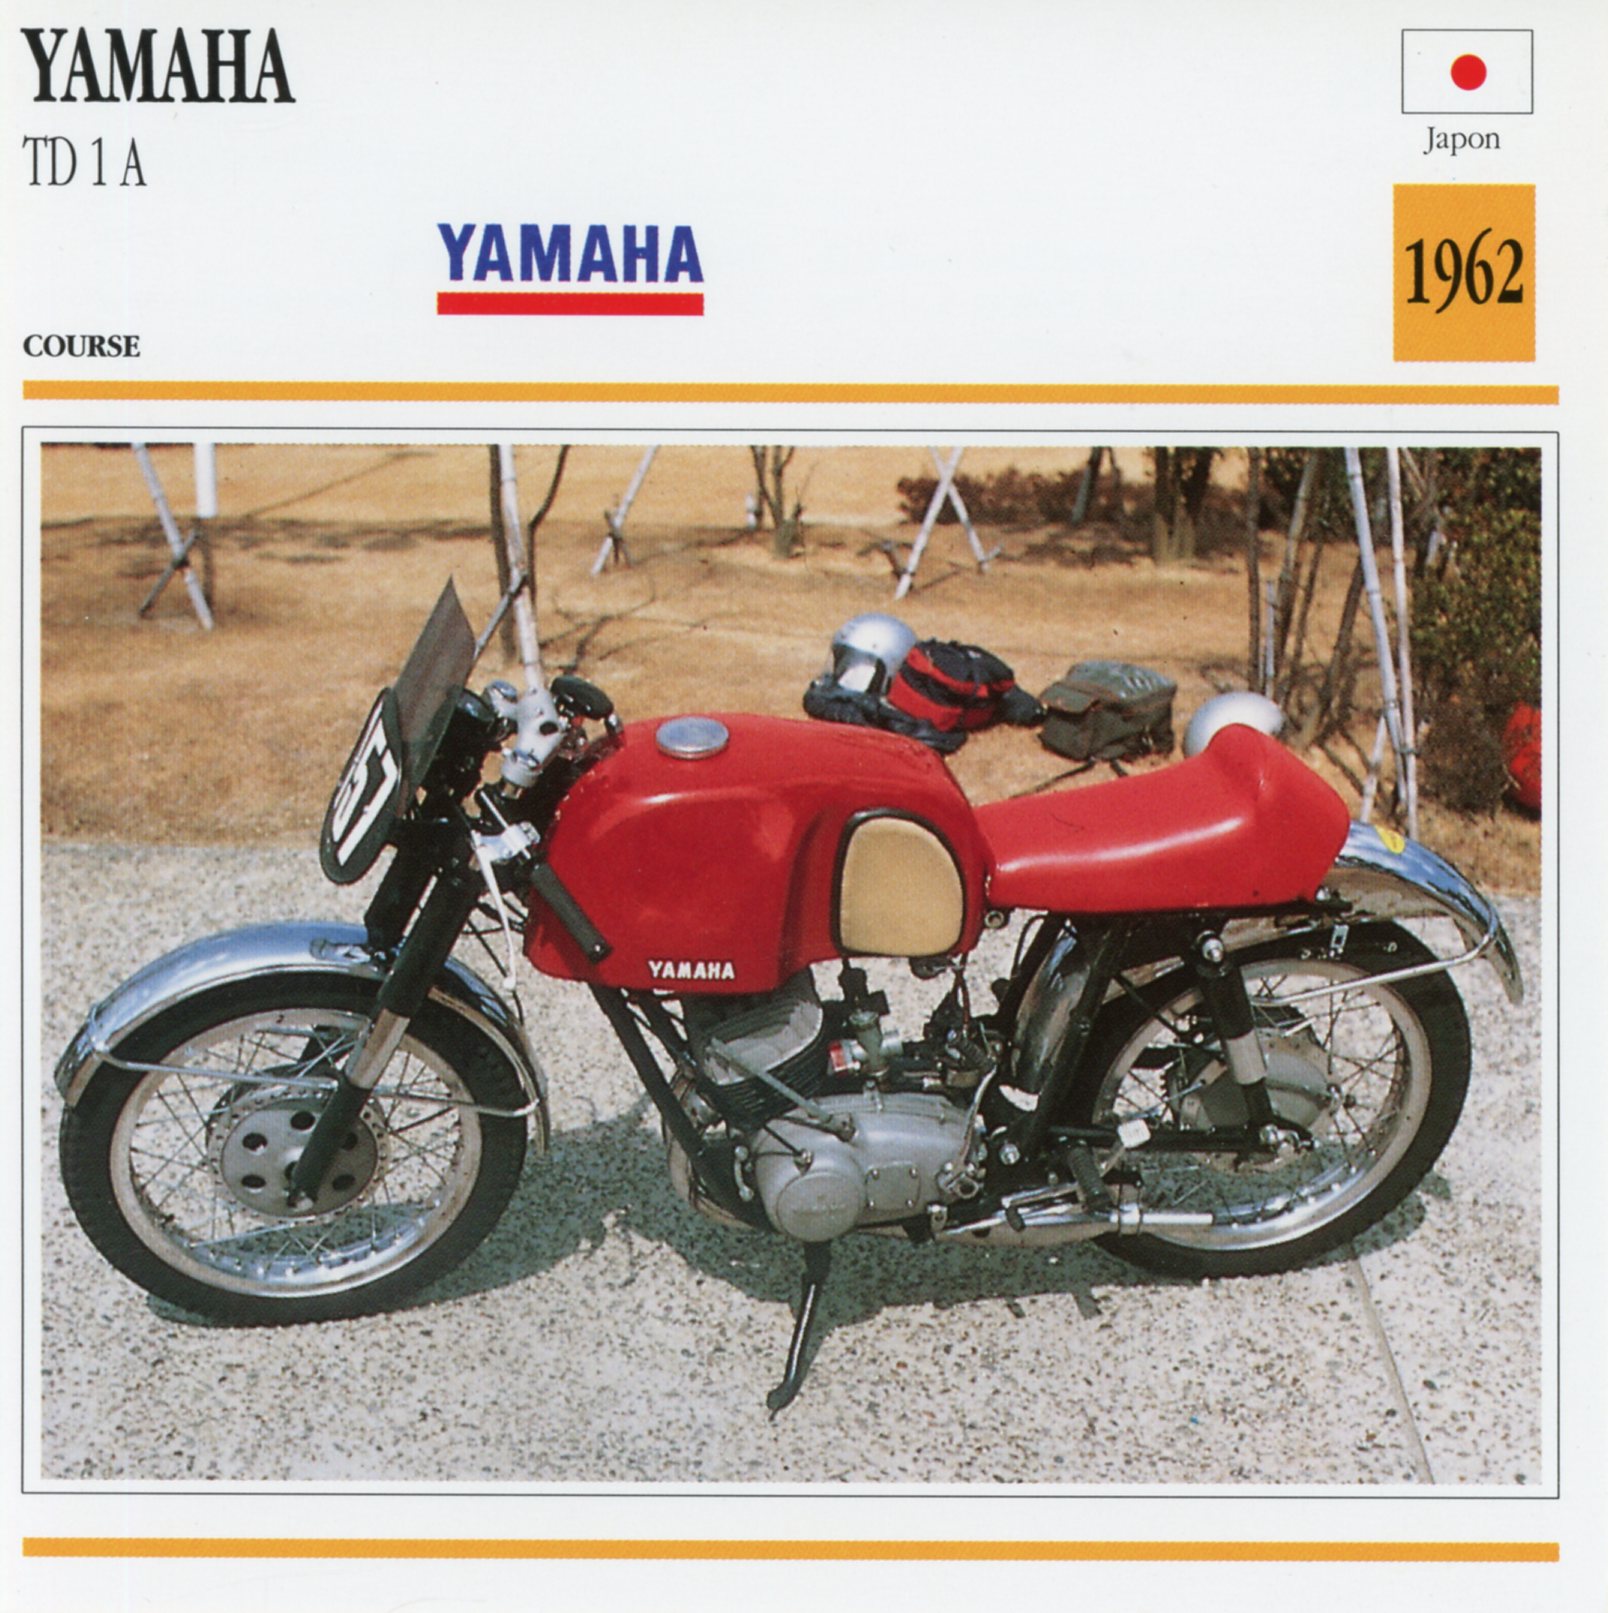 FICHE-MOTO-YAMAHA-TD-1A-TD1-TD1A-1960-LEMASTERBROCKERS-littérature-brochure